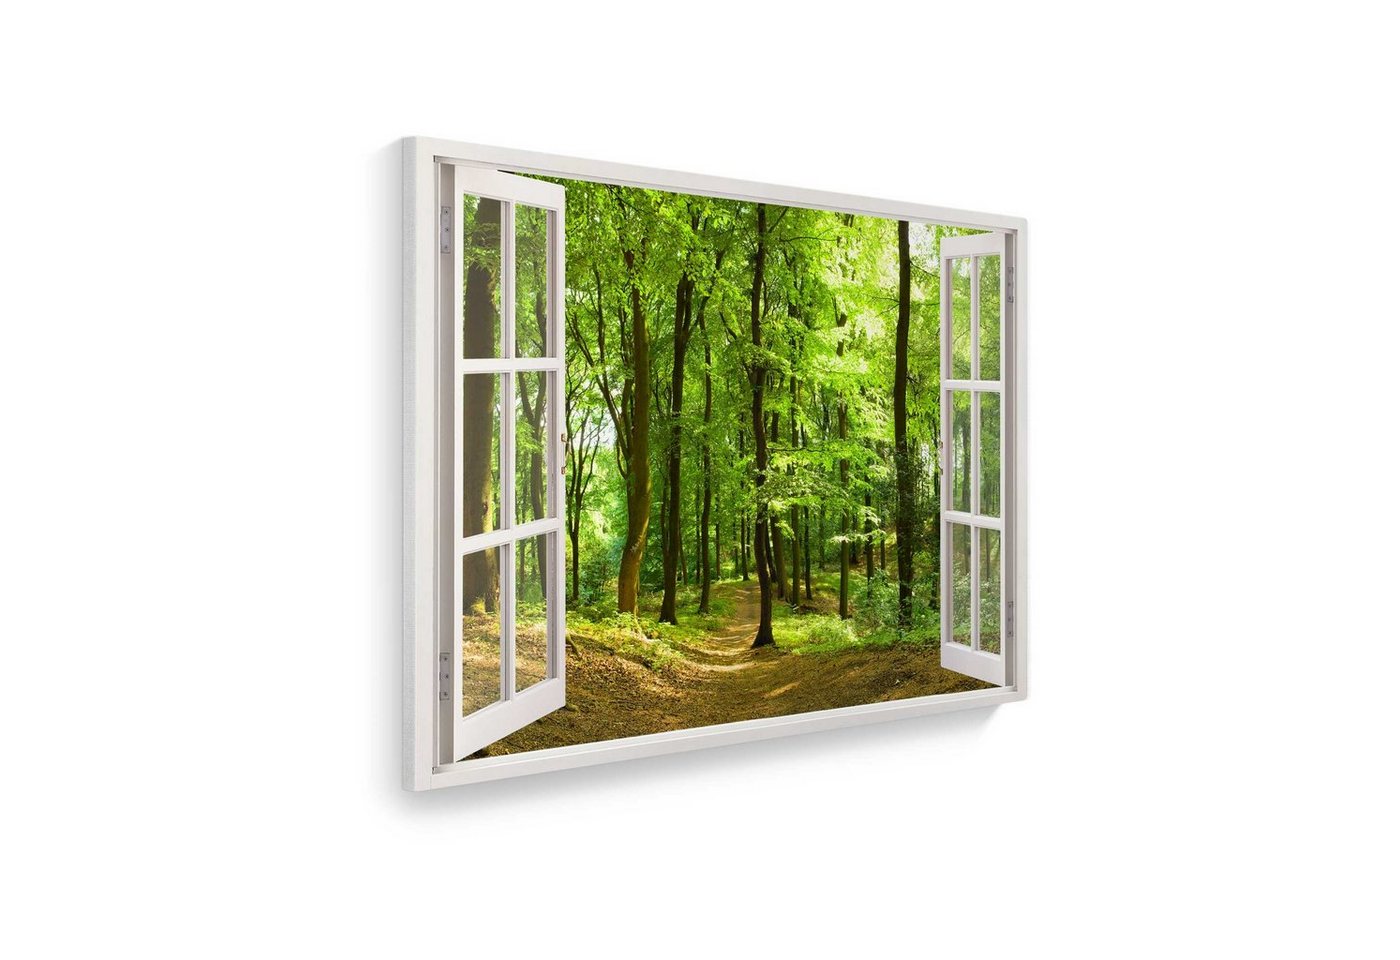 WallSpirit Leinwandbild Fenster mit Aussicht", Wald, Leinwandbild geeignet für alle Wohnbereiche" von WallSpirit